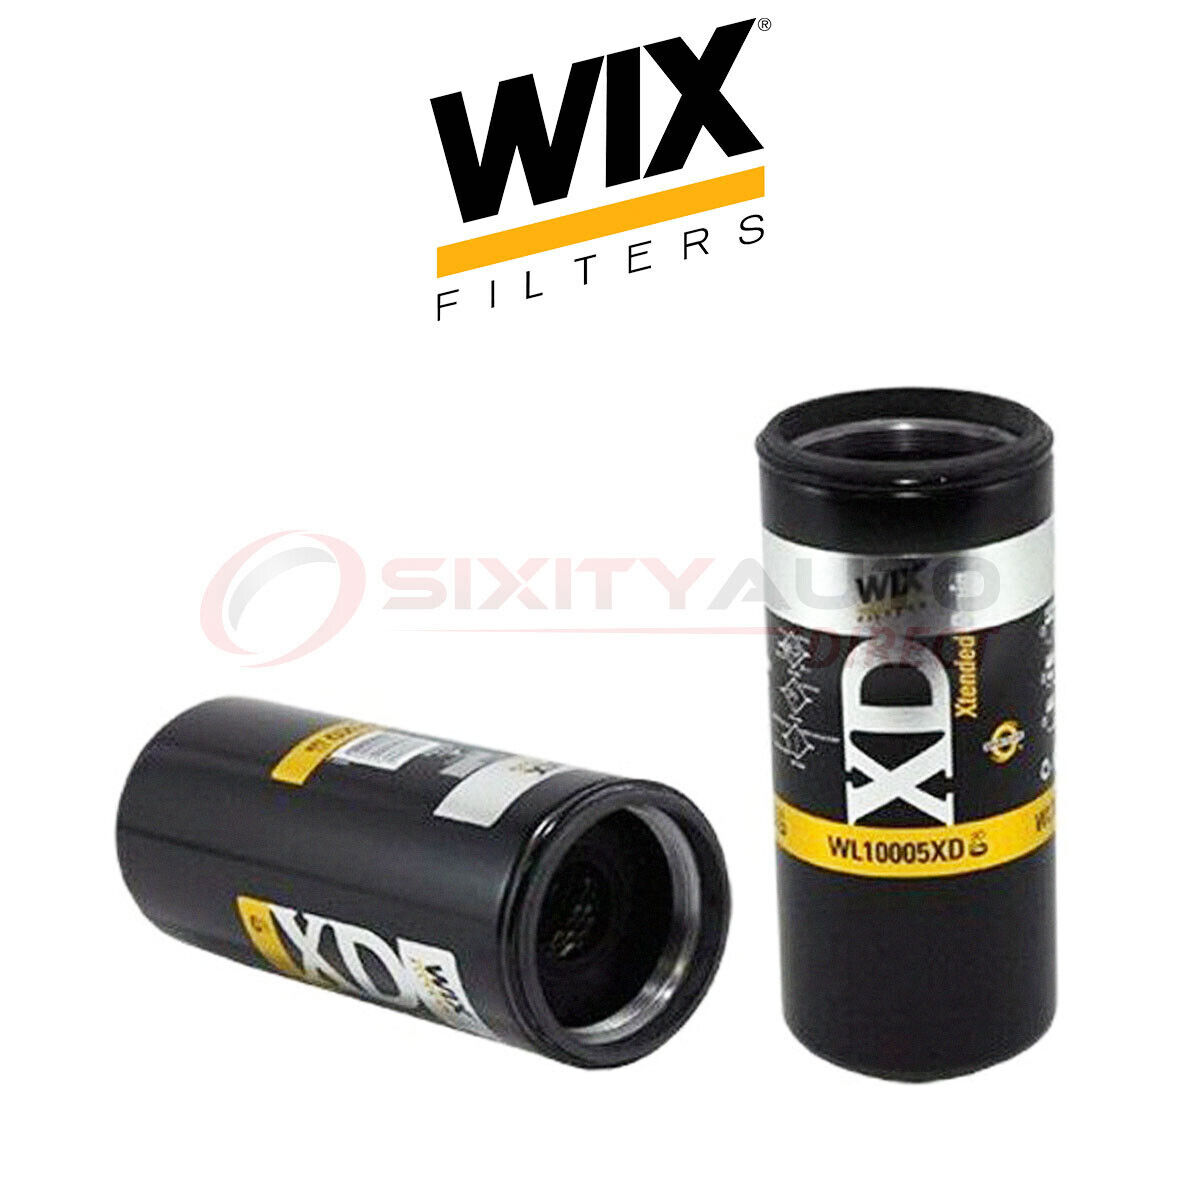 WIX WL10005XD Engine Oil Filter for Engine Filtration System cz